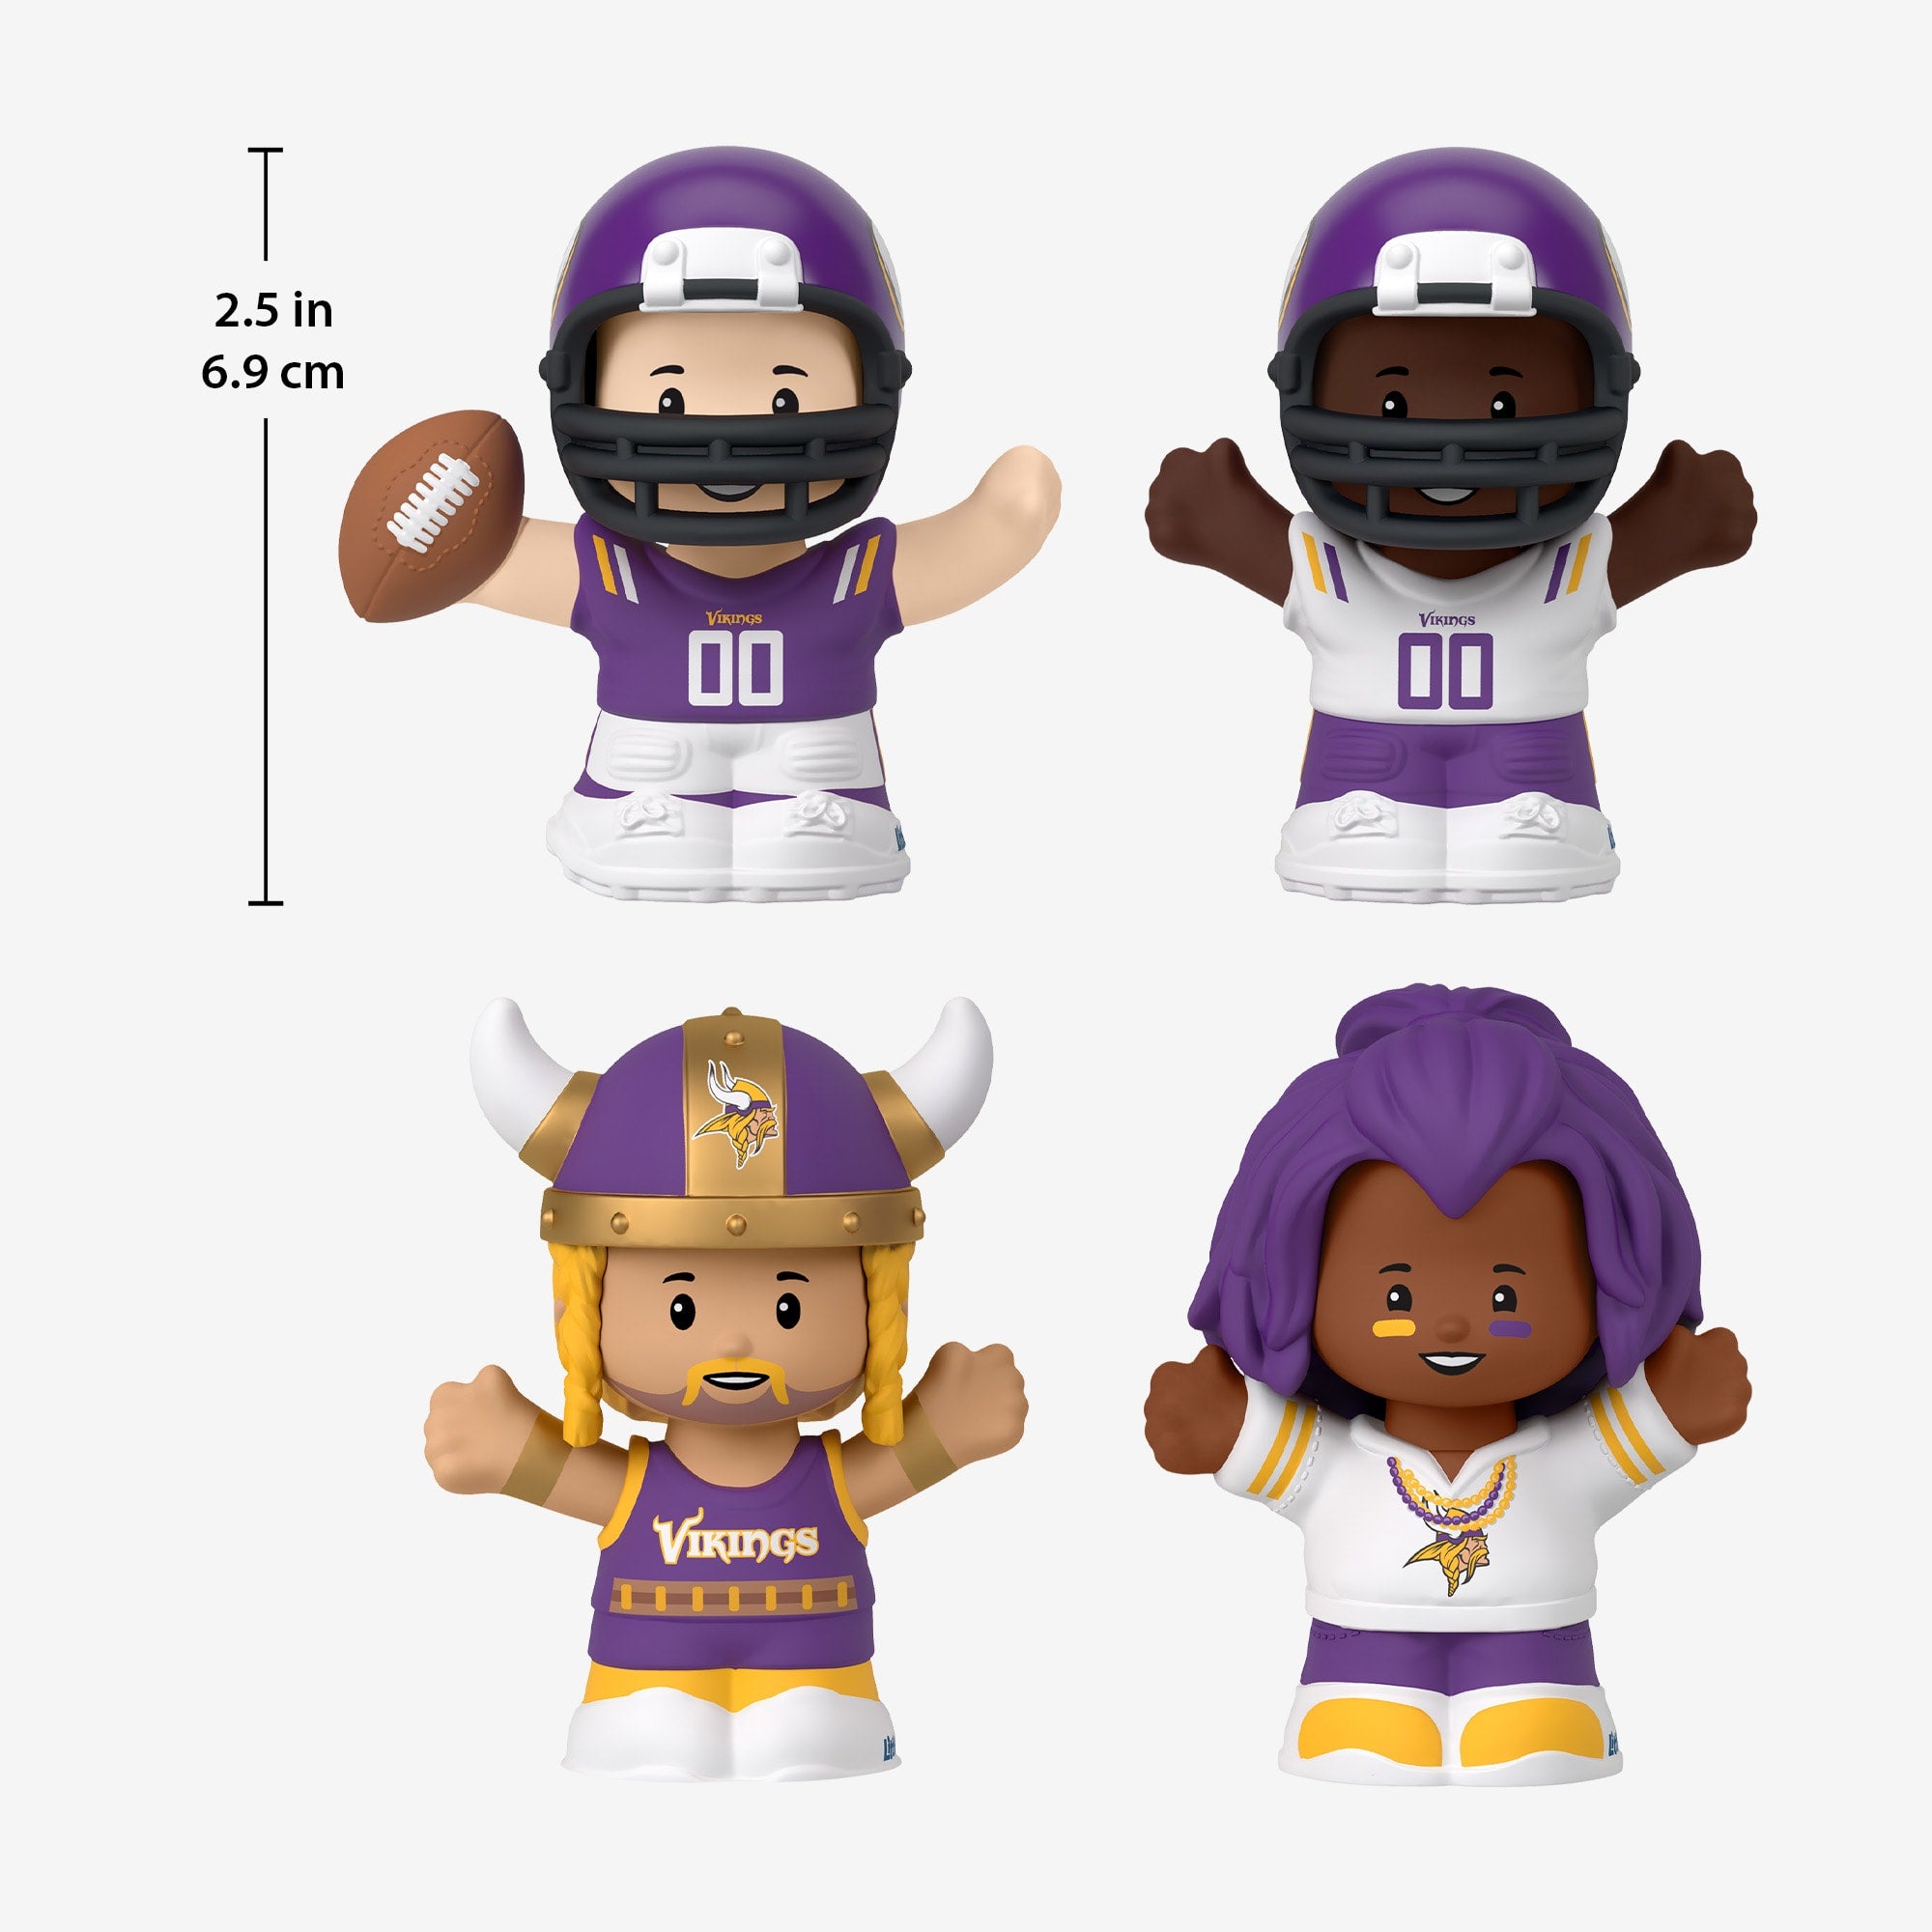 Little People Collector x NFL Minnesota Vikings Set